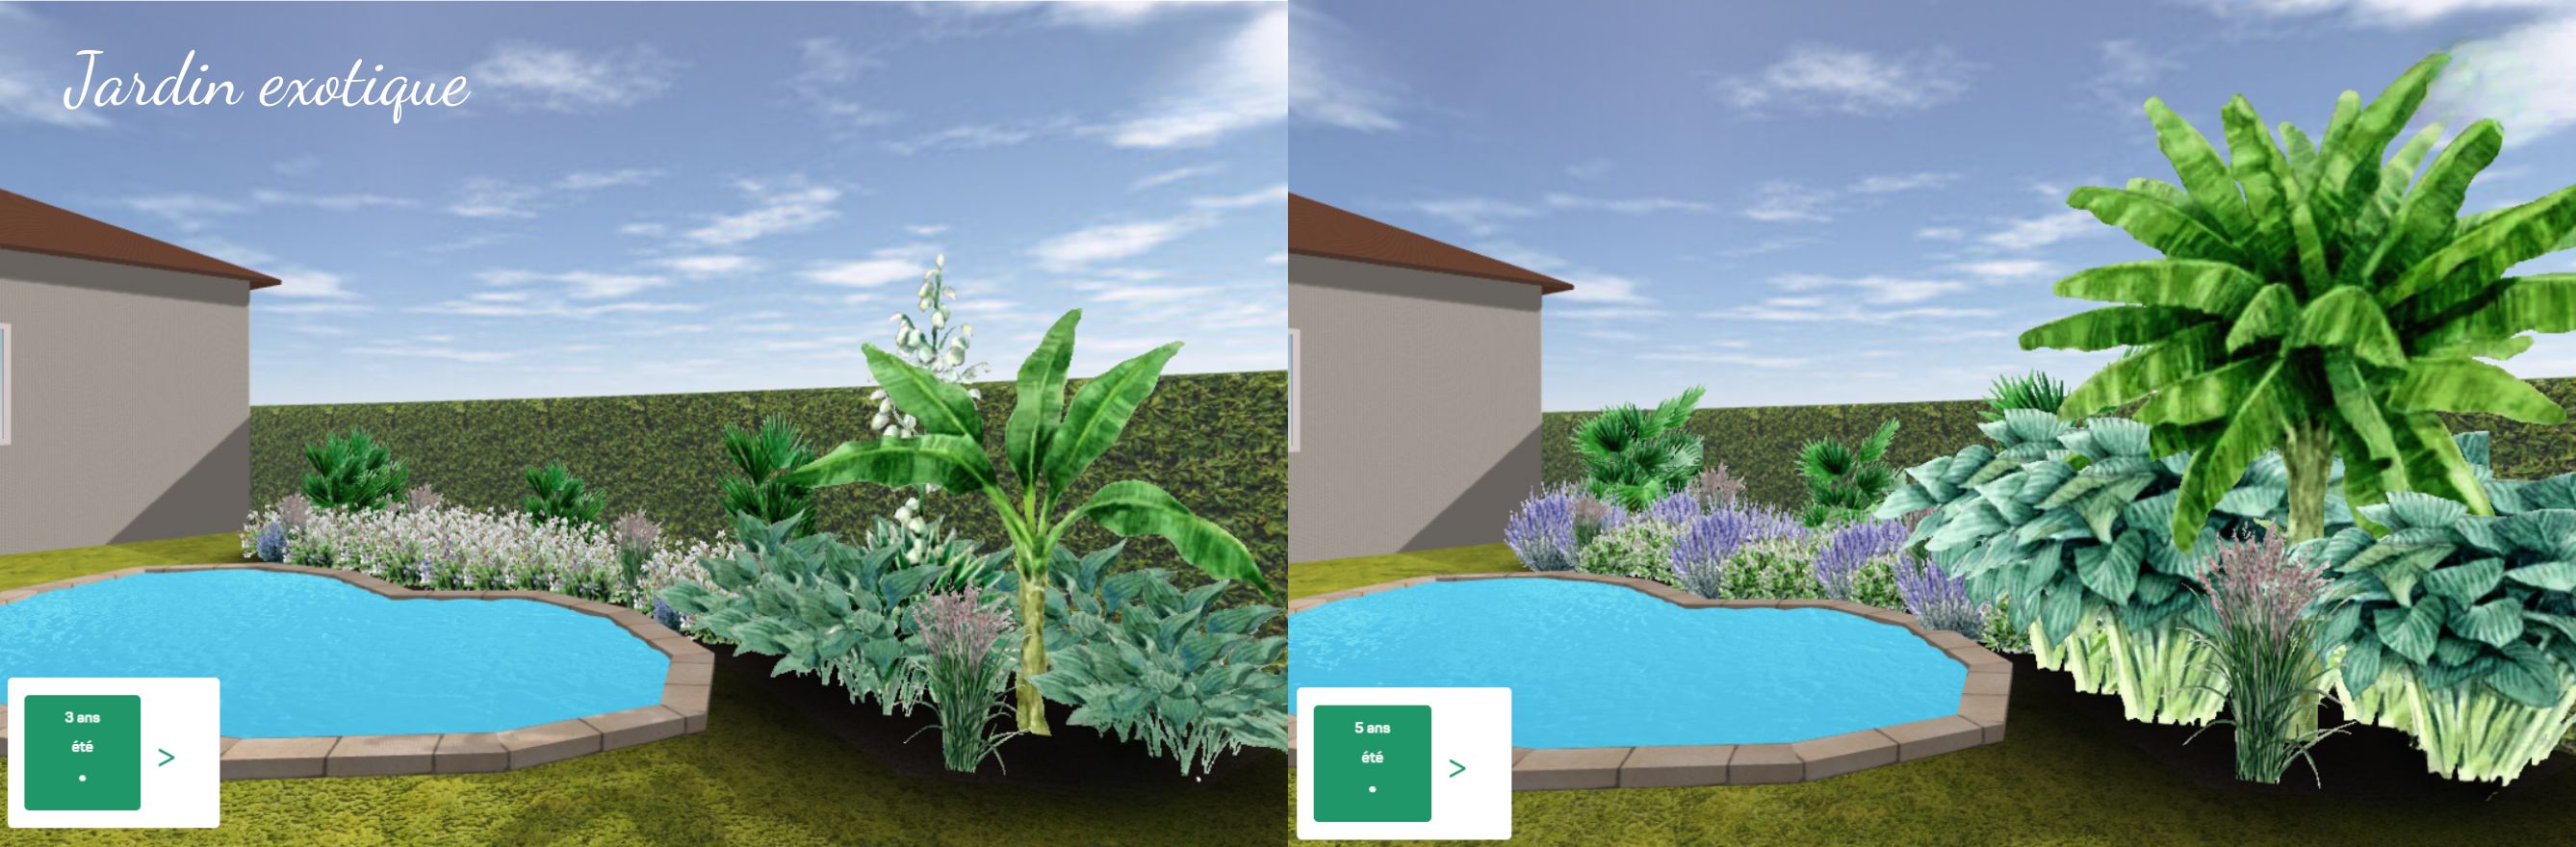 Jardin exotique en 3D